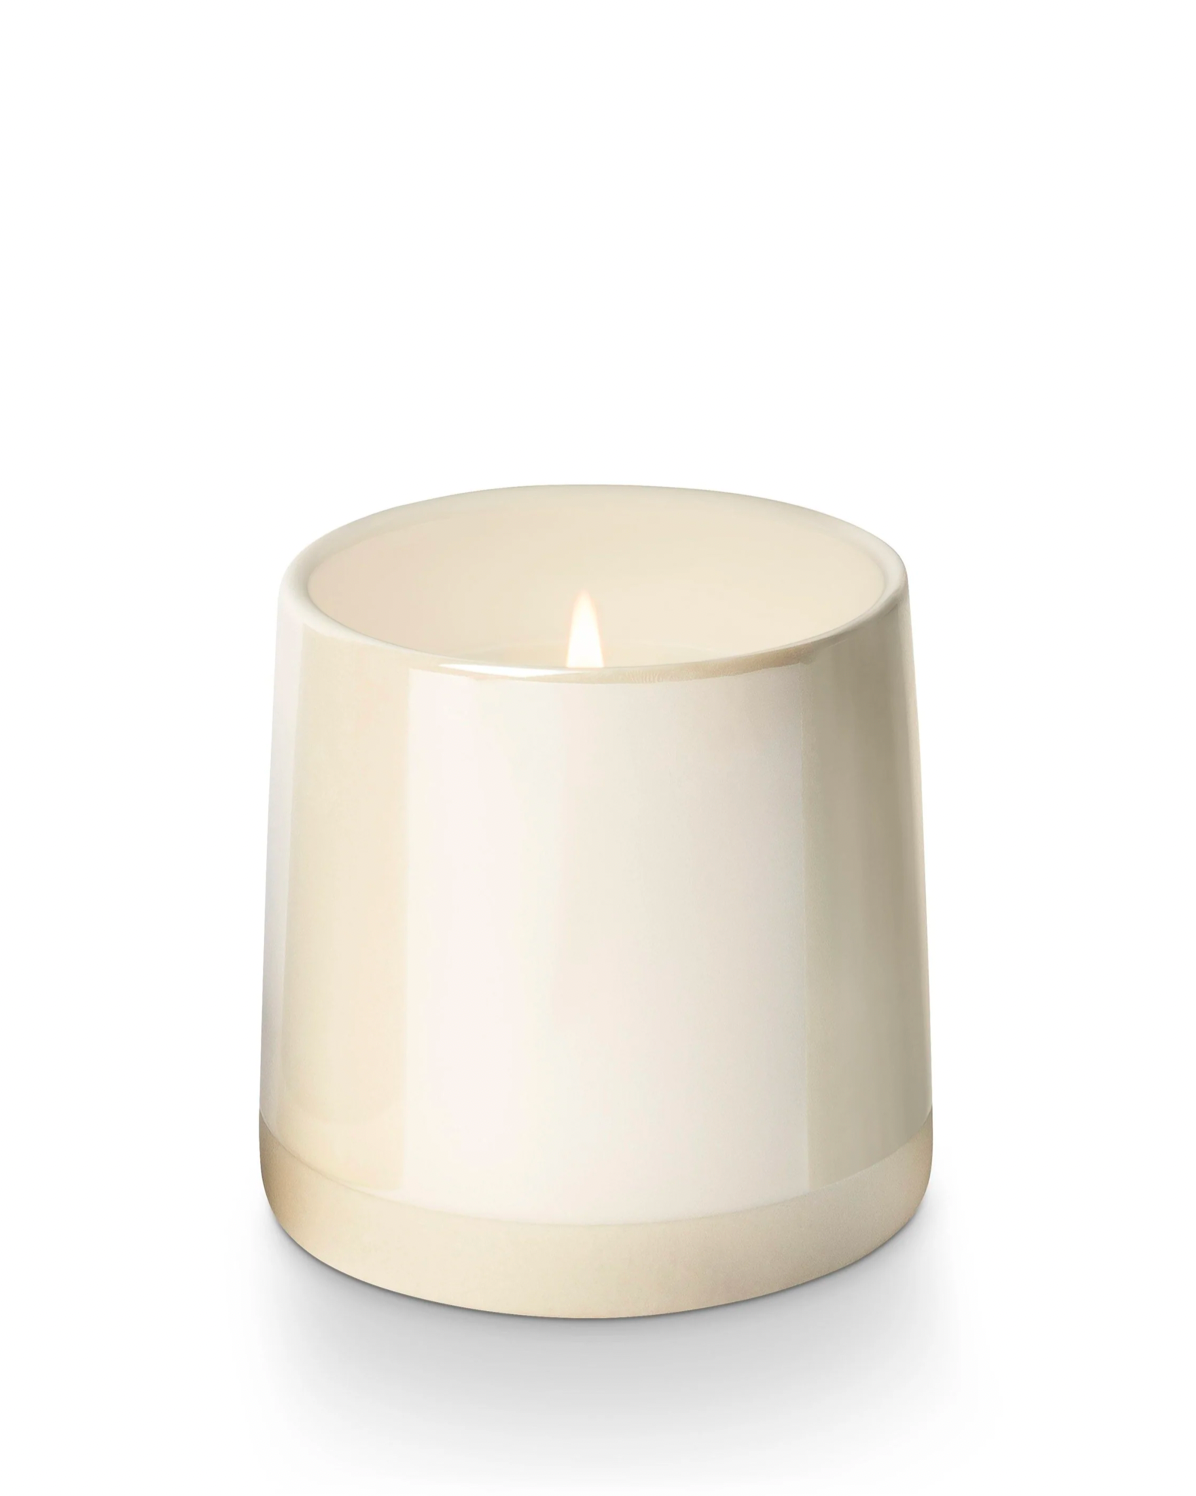 Image of ILLUME Winter white shine ceramic candle on a white background